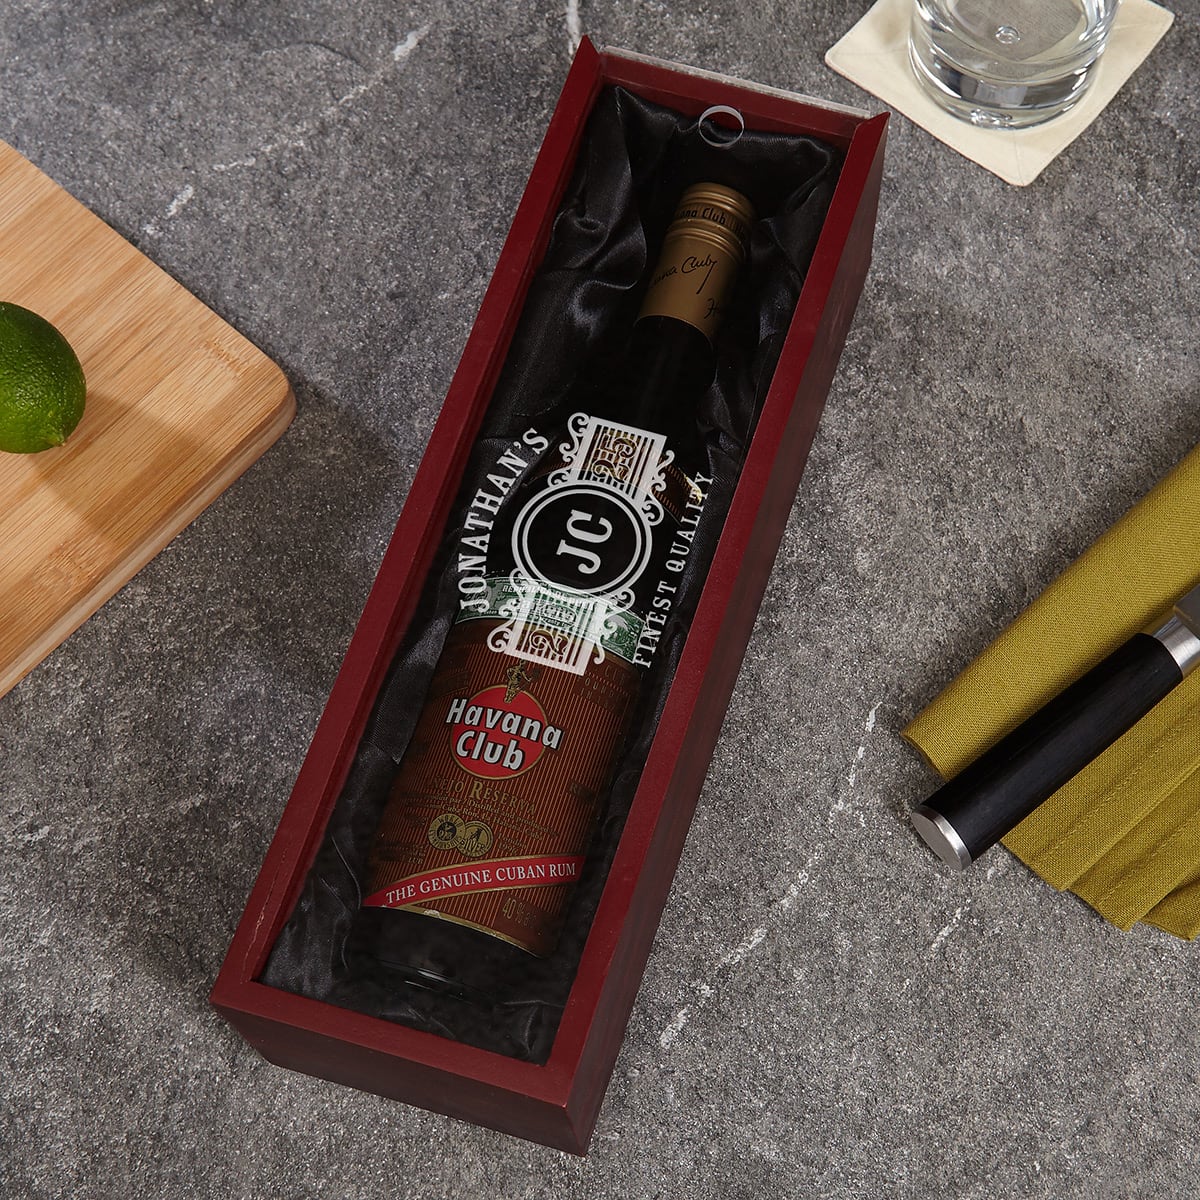 Engraved Wooden Box for Liquor Bottles